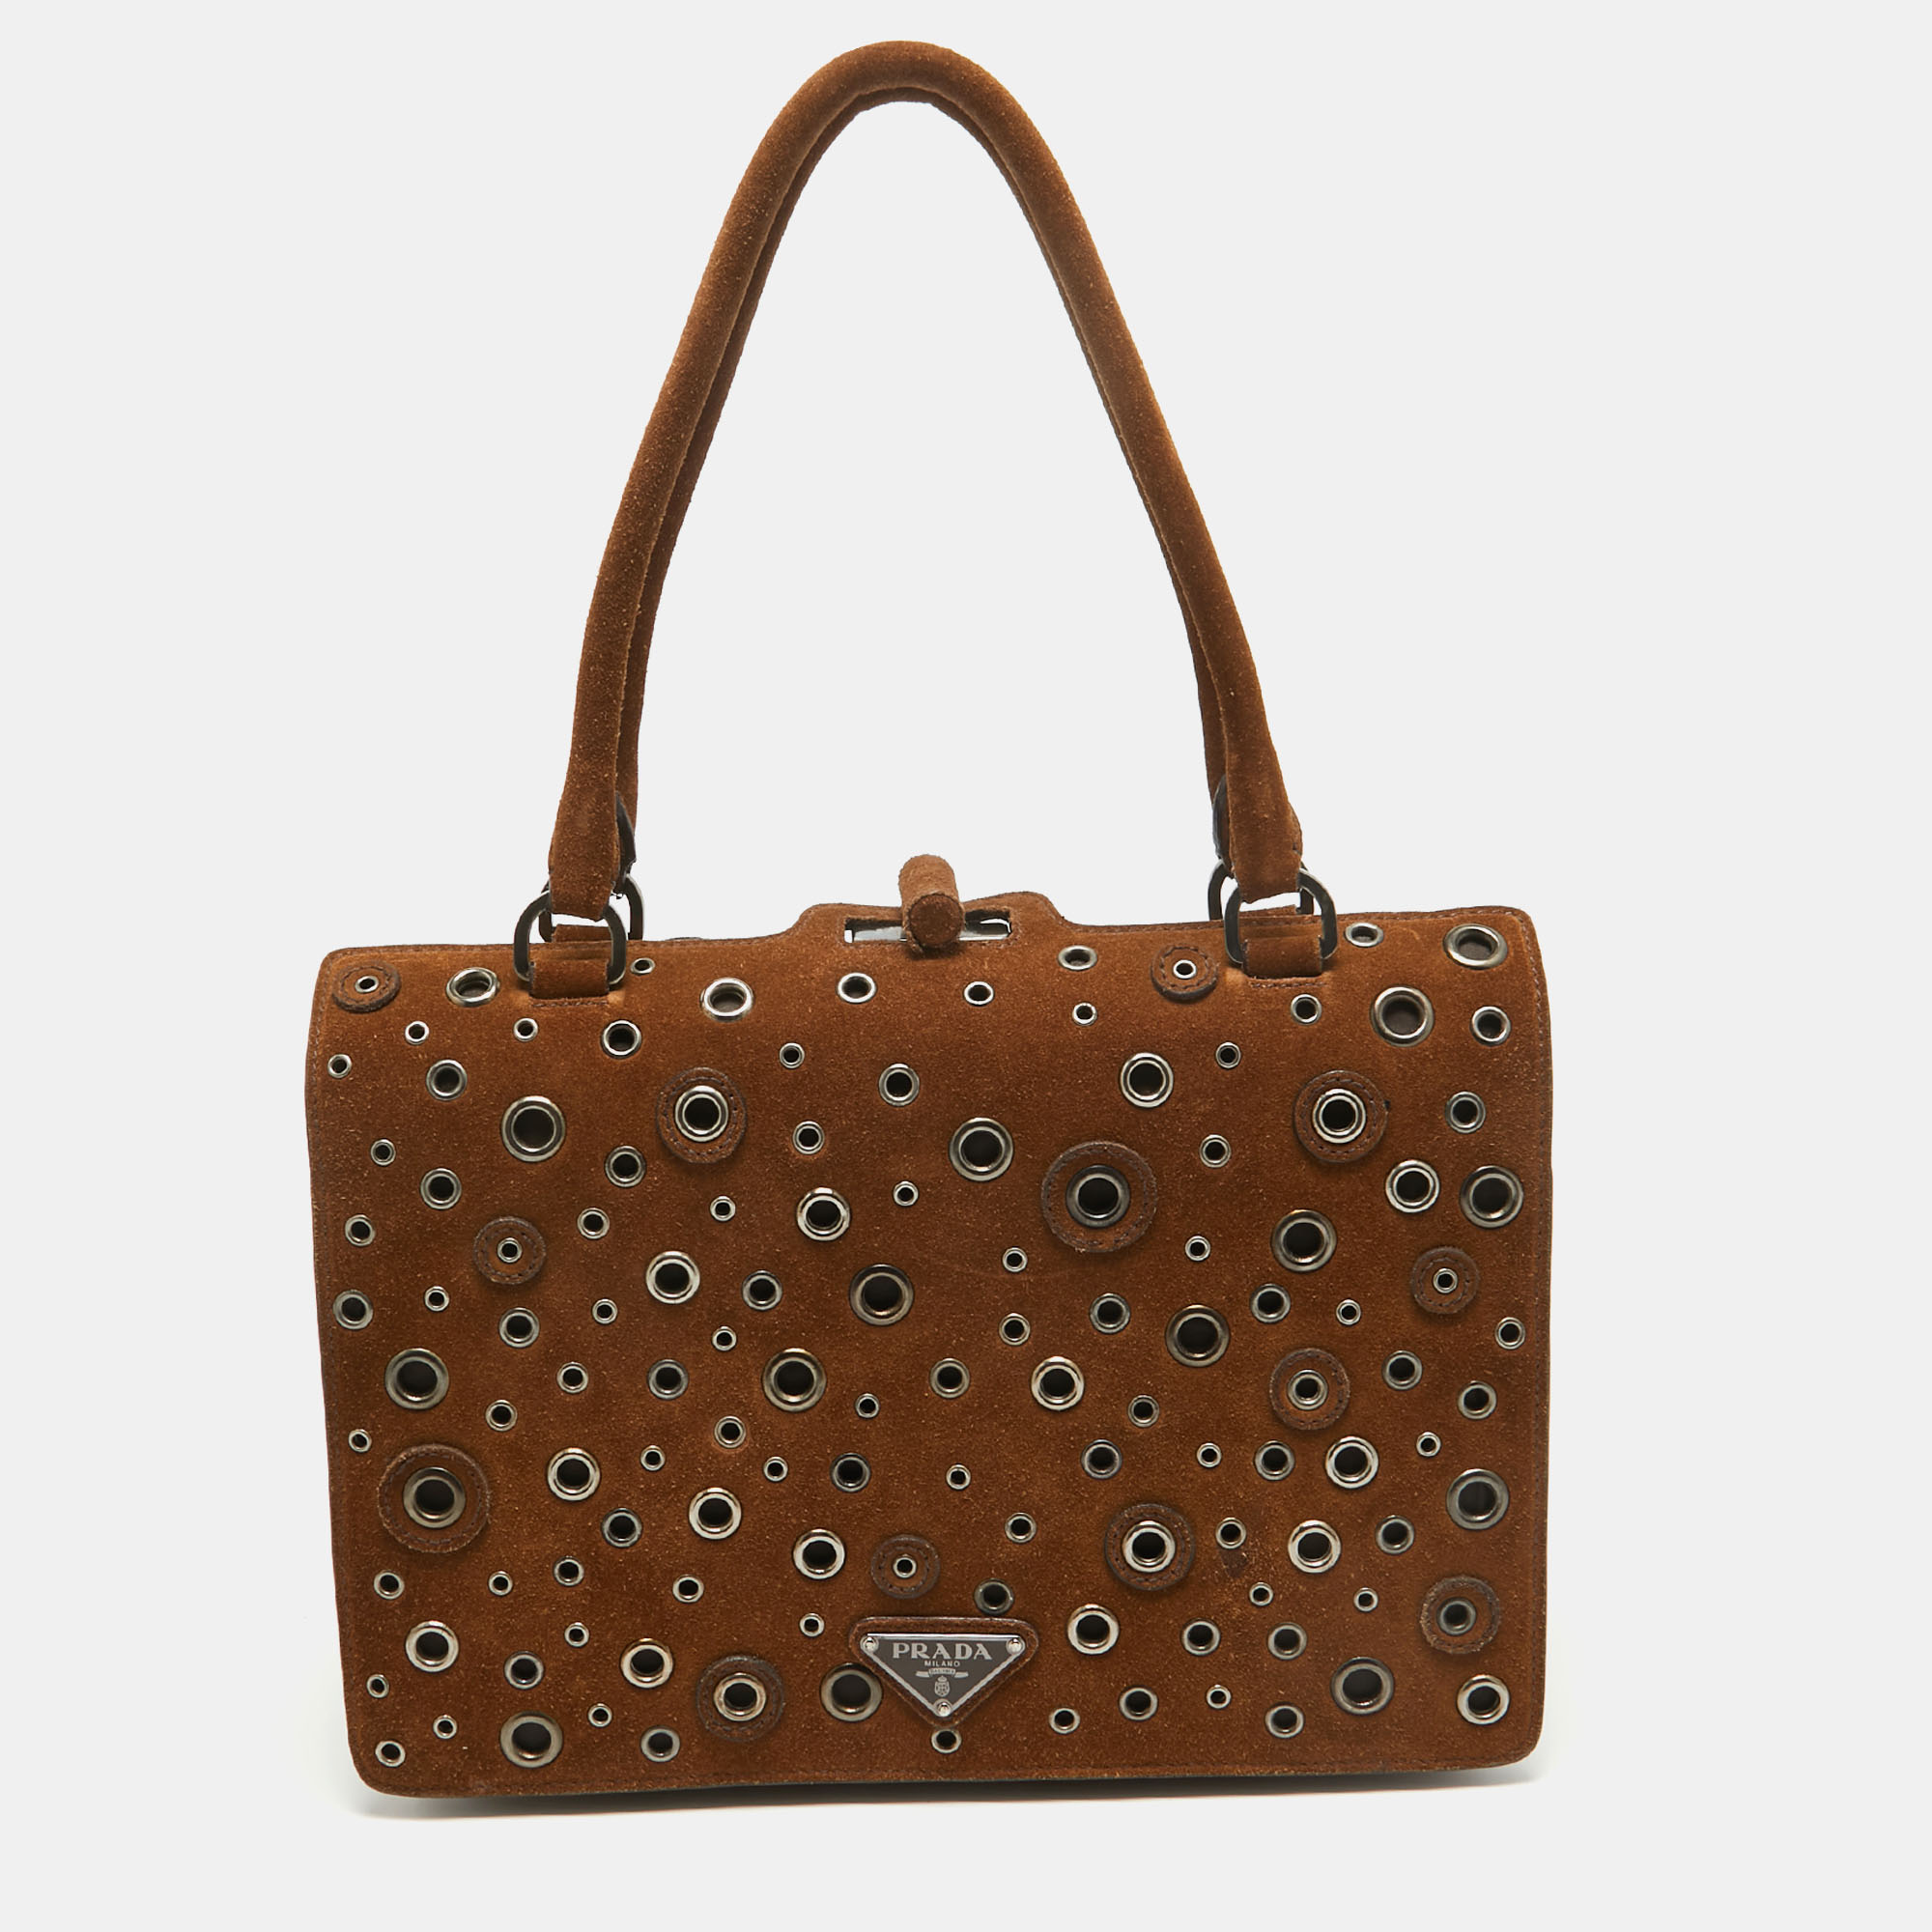 Prada brown suede grommet frame satchel